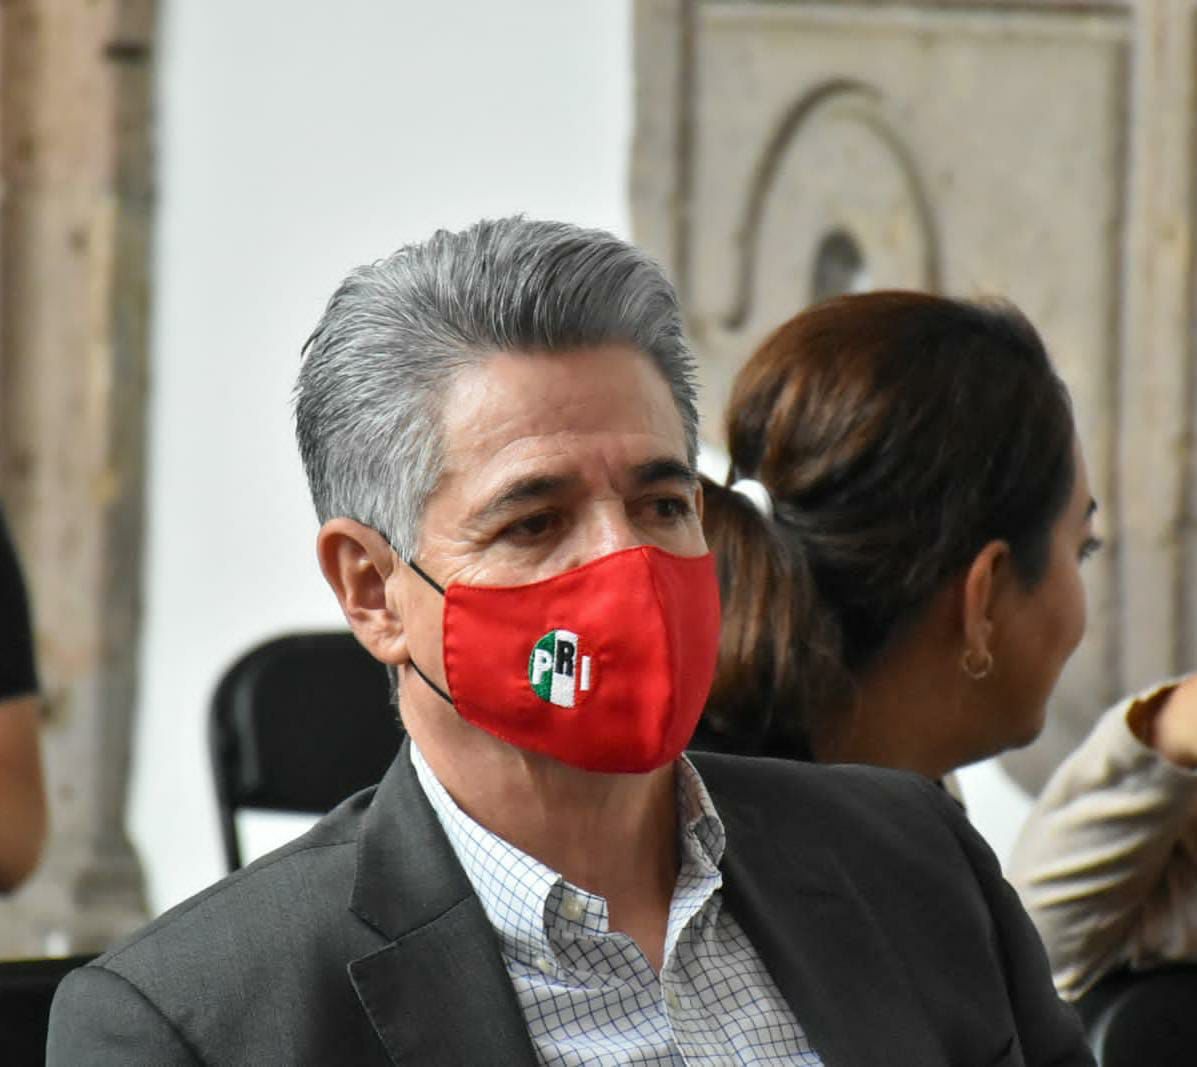 Los diputados del PRI apoyamos todo lo que le haga bien a los michoacanos: Hernández Peña